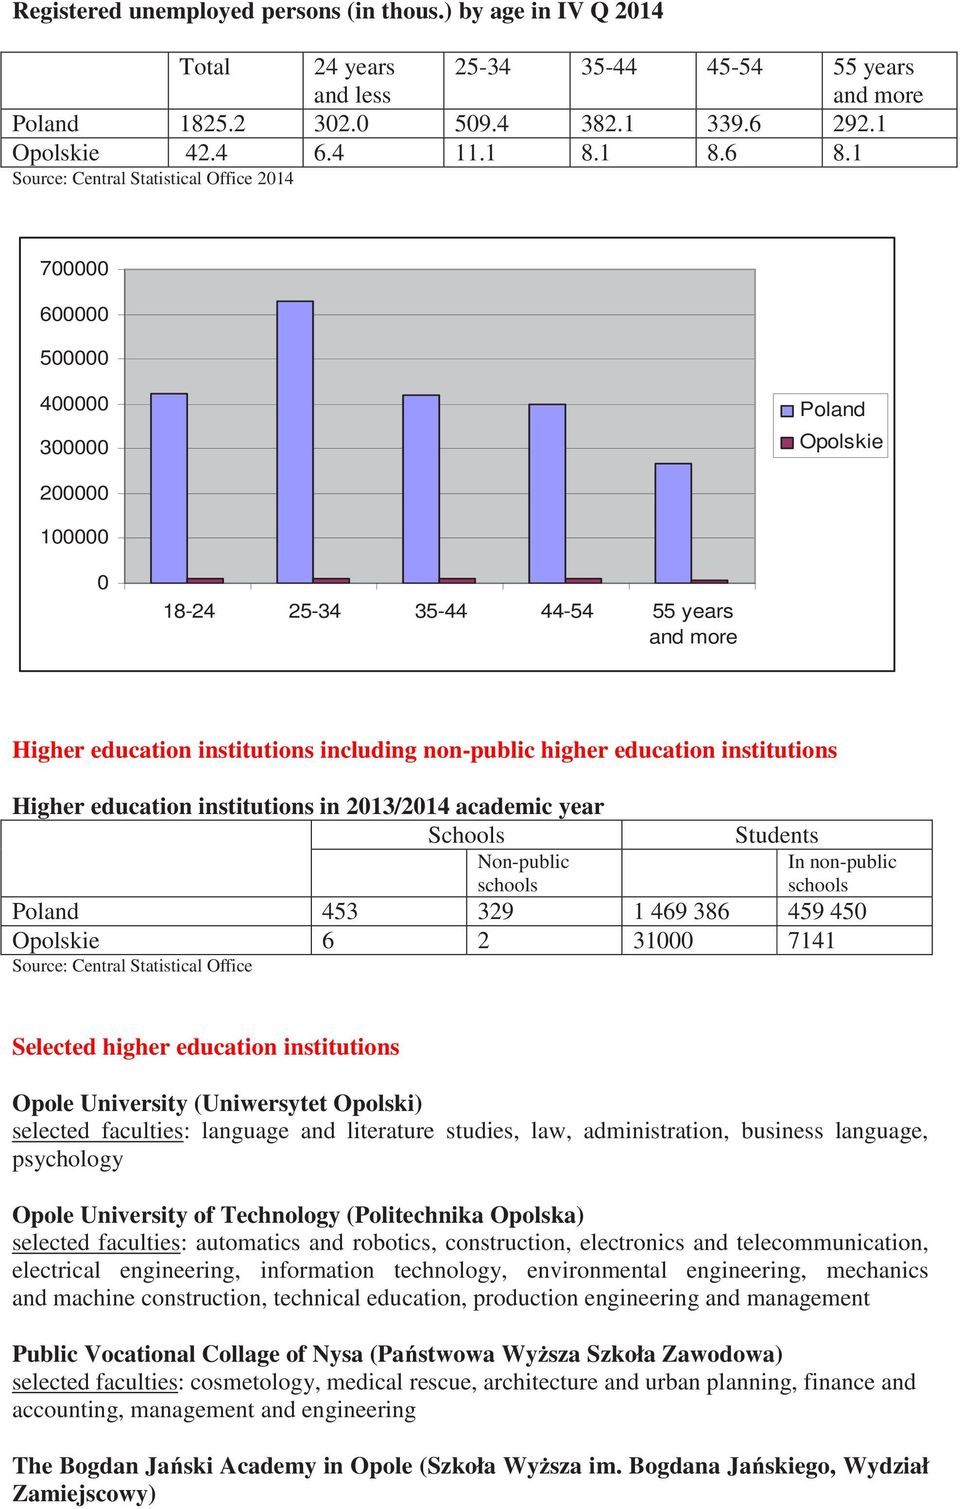 higher educatin institutins Higher educatin institutins in 2013/2014 academic year Schls Nn-public schls Students In nn-public schls Pland 453 329 1 469 386 459 450 Oplskie 6 2 31000 7141 Surce: